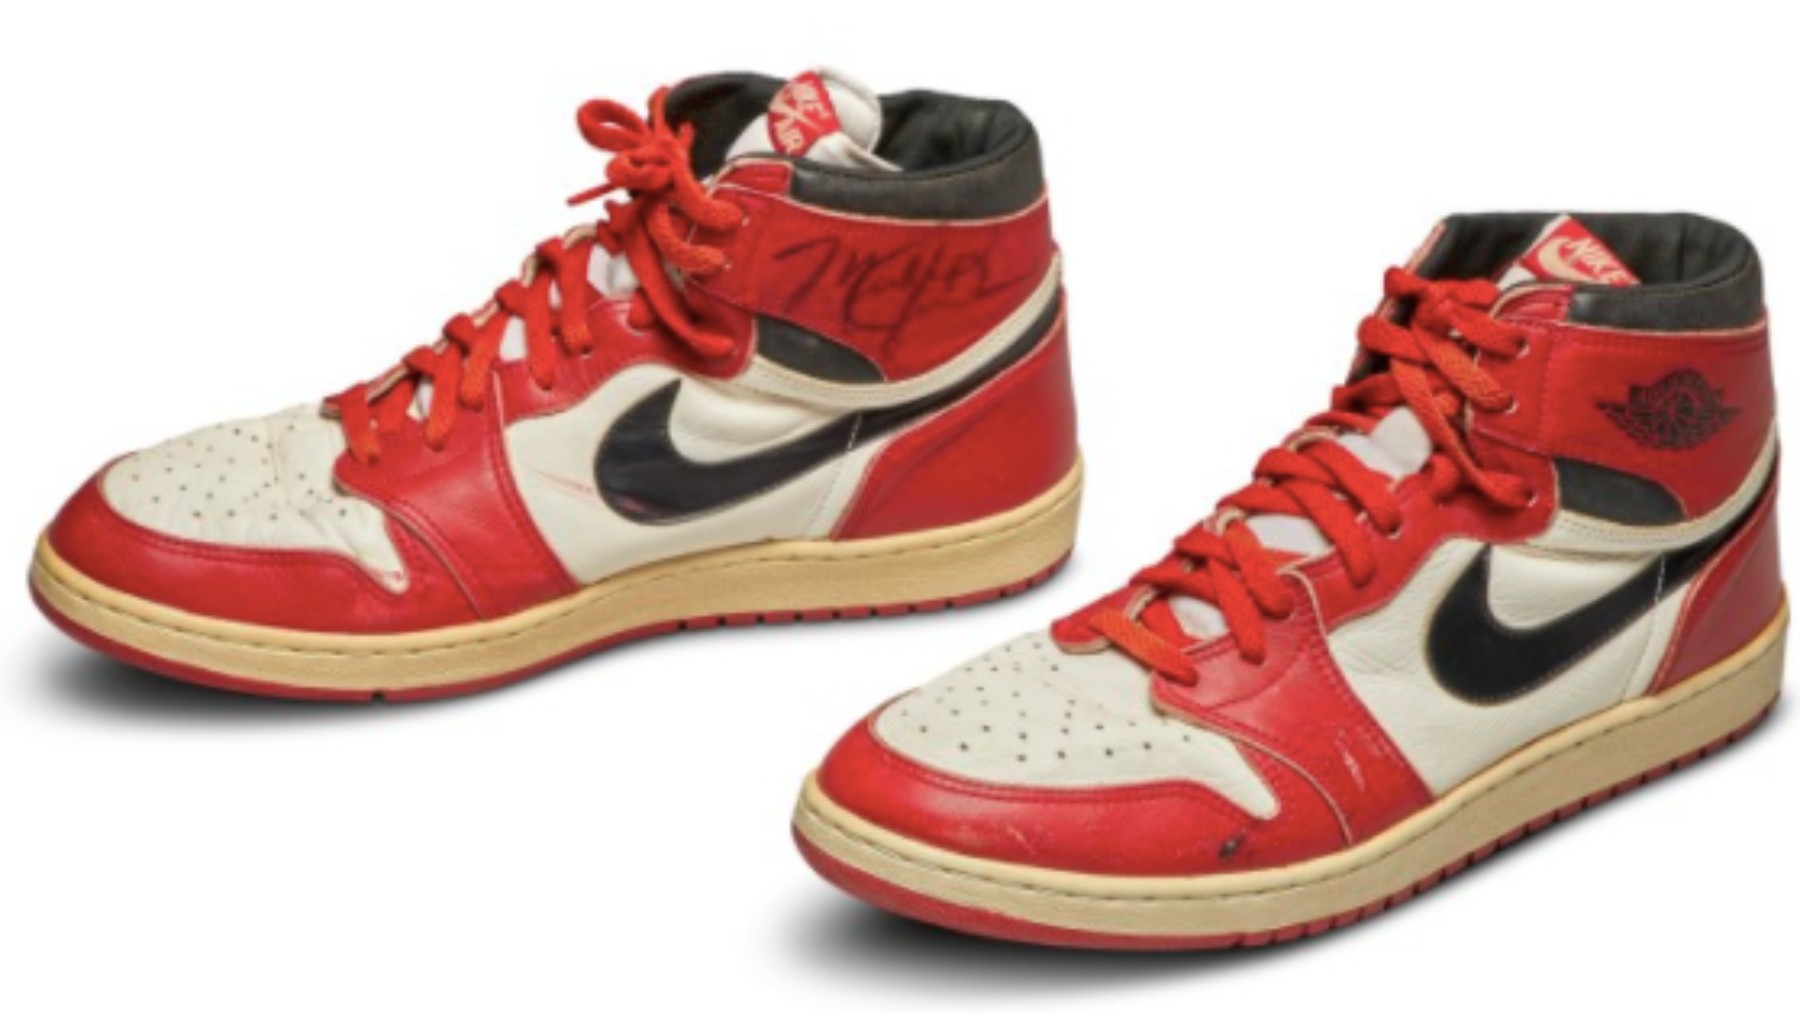 Las primeras zapatillas de Michael Jordan que saldrán a subasta. (sothebys.com)